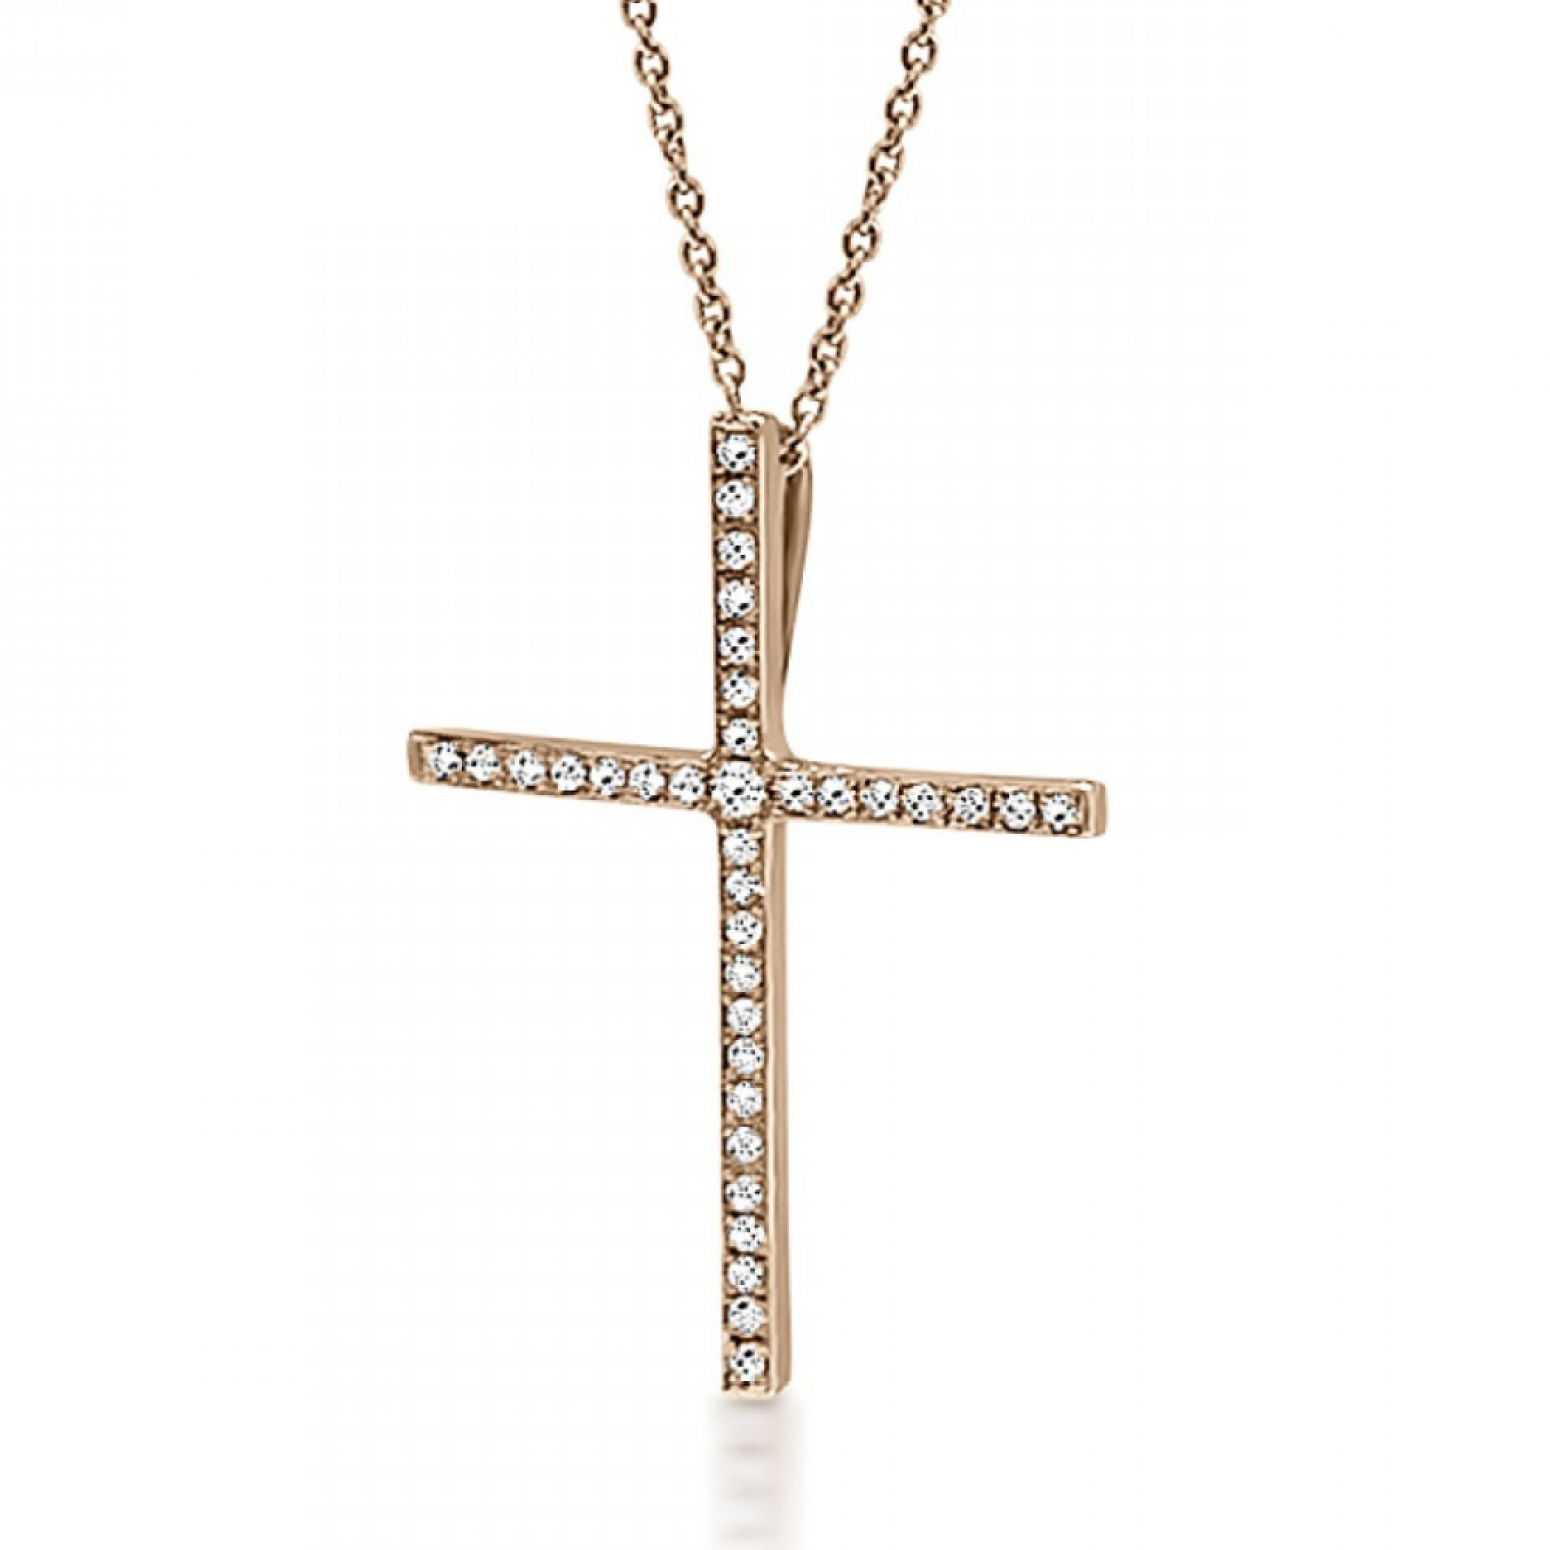 Βαπτιστικός σταυρός με αλυσίδα Κ18 ροζ χρυσό με διαμάντια 0.11ct, VS2, H ko5164 ΣΤΑΥΡΟΙ Κοσμηματα - chrilia.gr